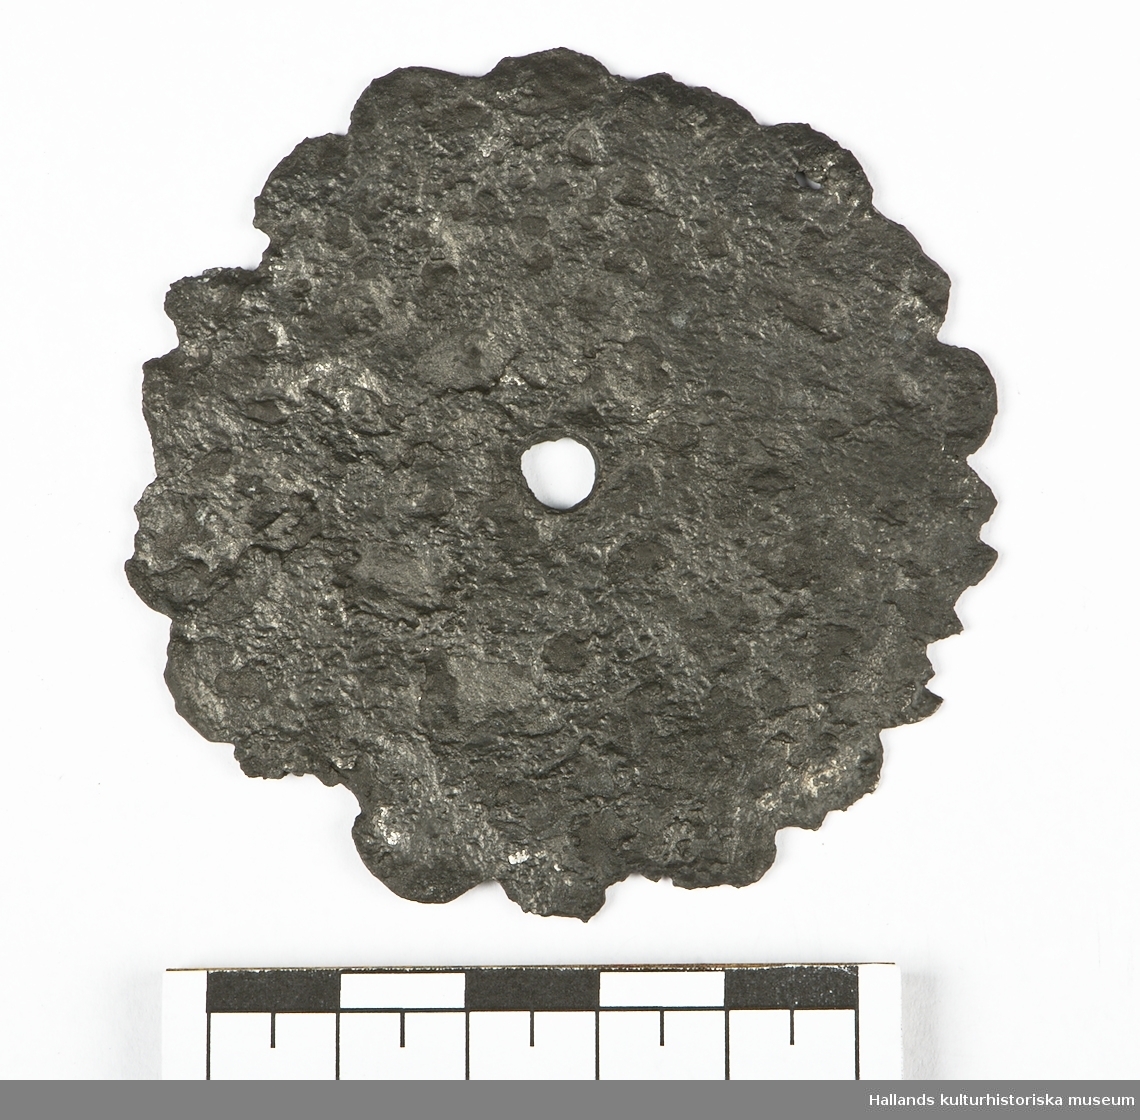 En cirkelformad platta med 18 stycken runda taggar i kanten. I metallen syns rester av mönster och i mitten finns ett hål. Troligtvis fårn likkista.